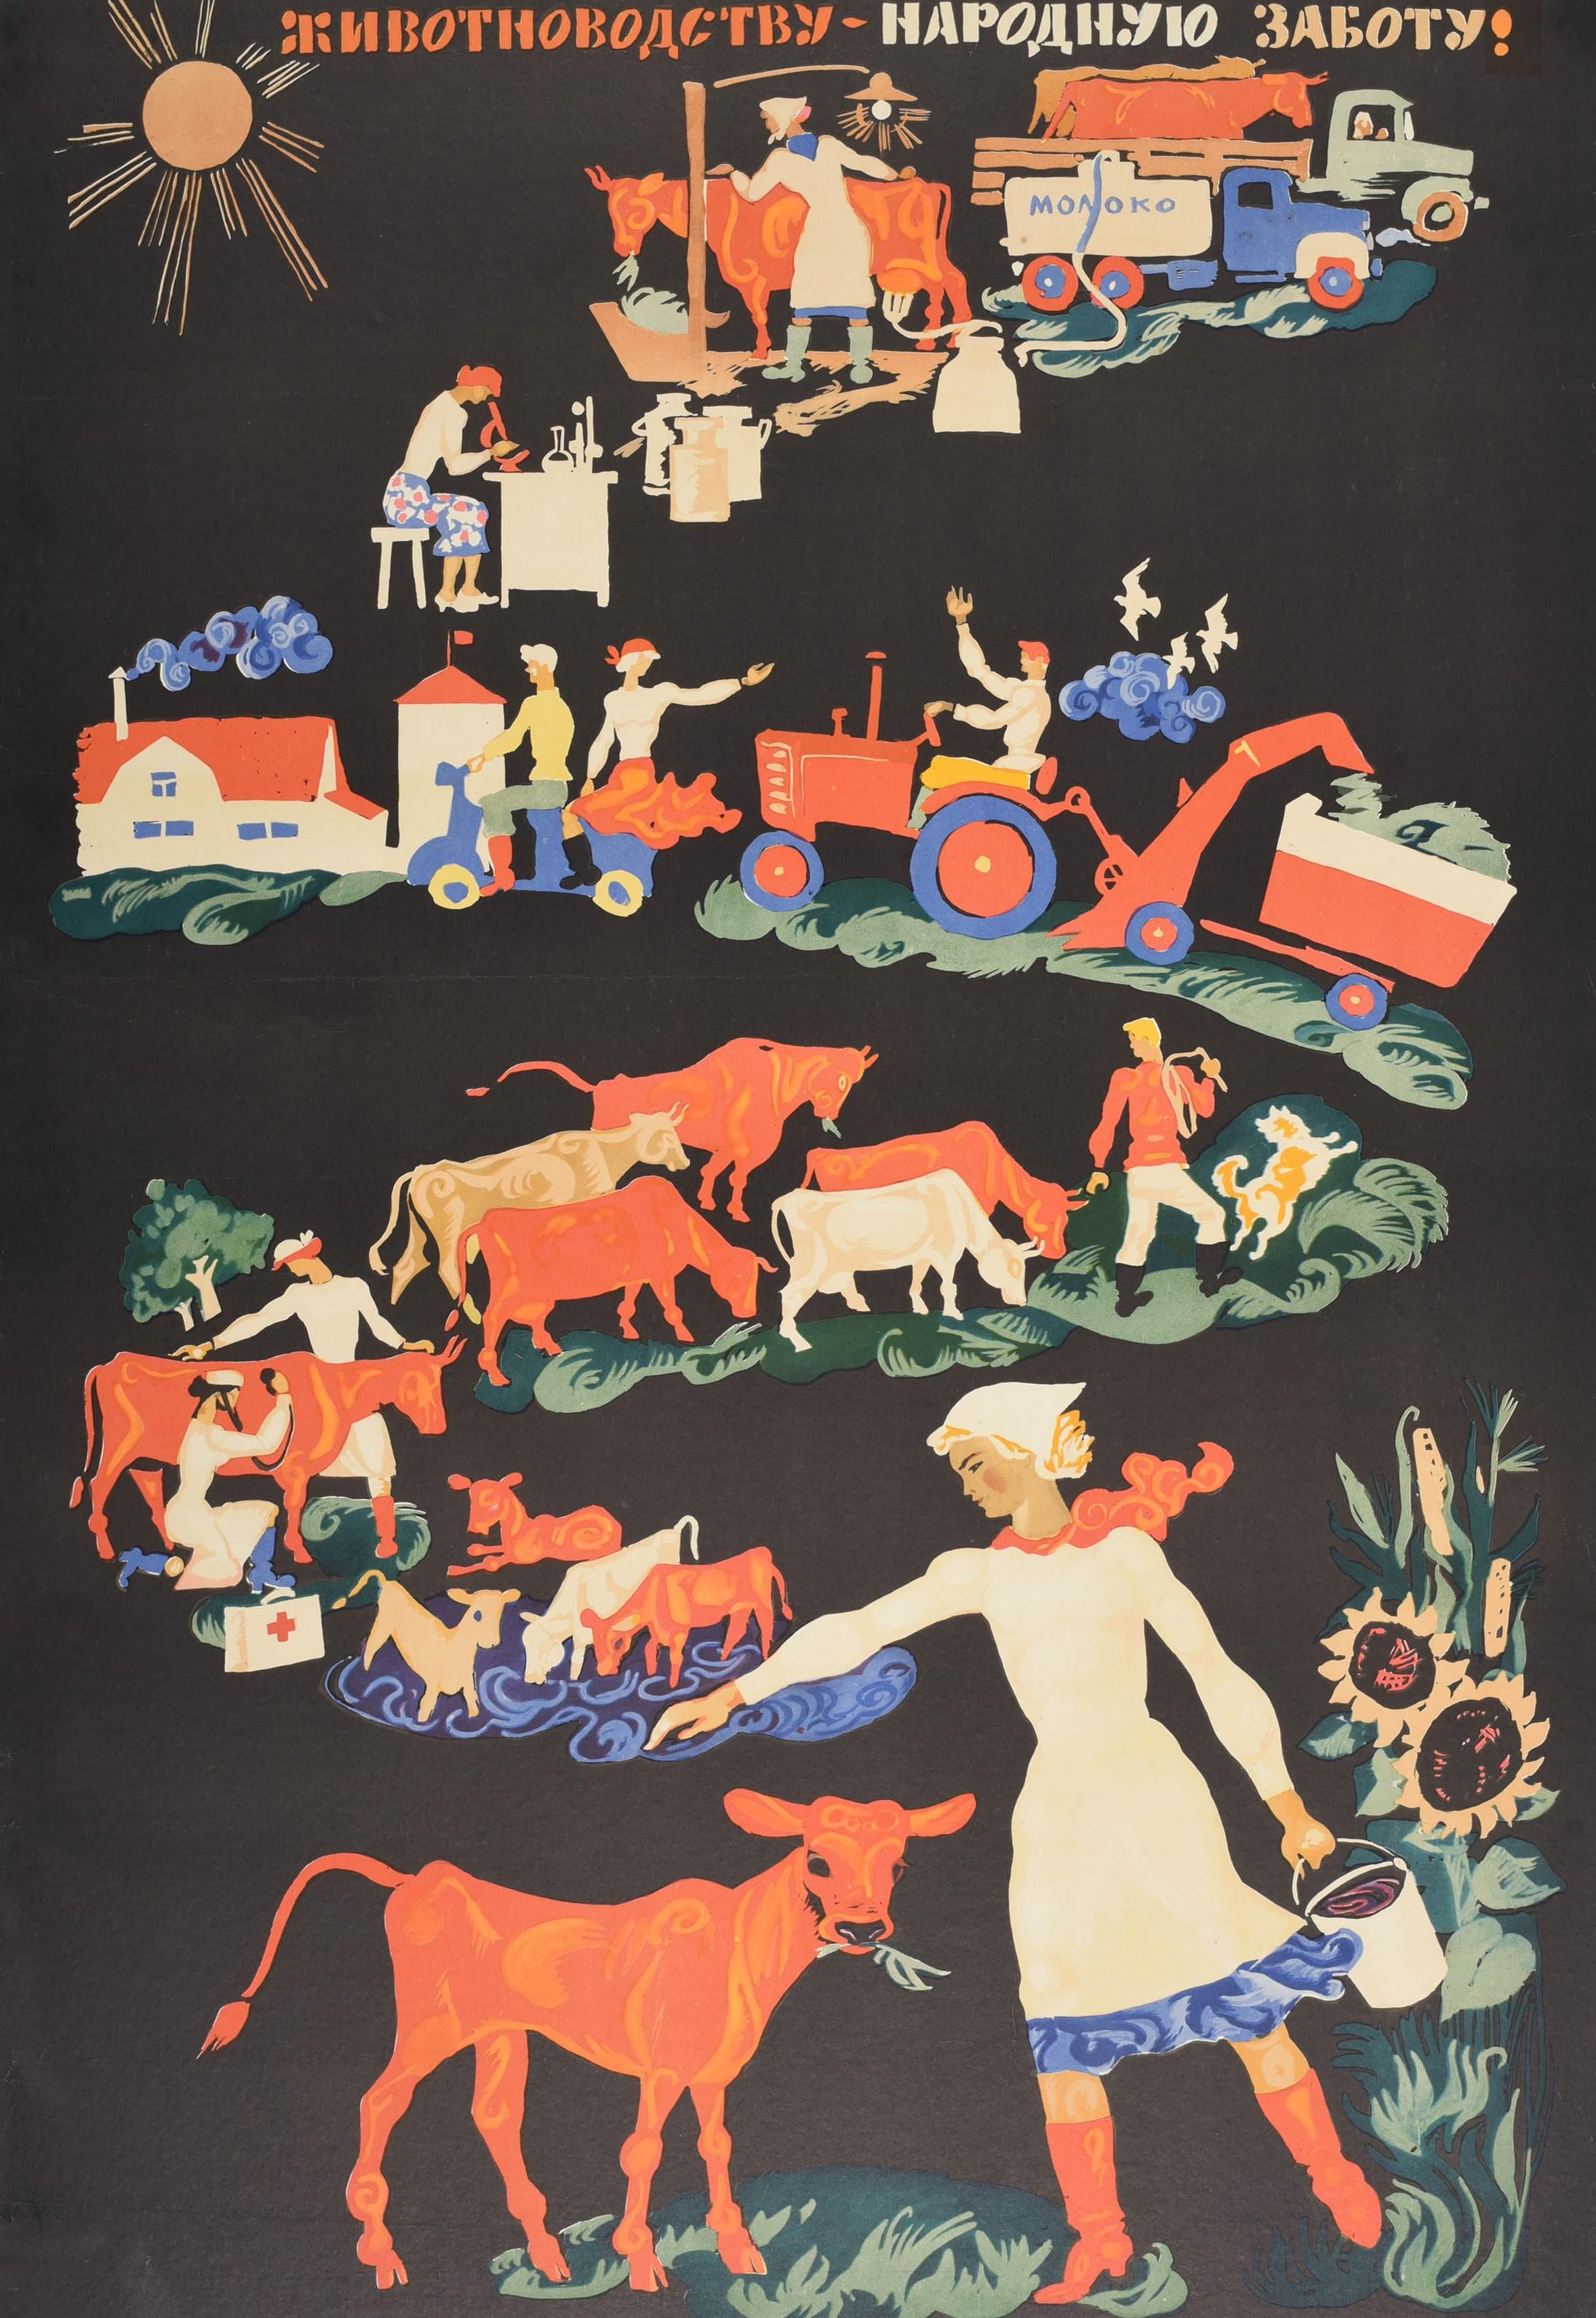 Originales sowjetisches Propagandaplakat - Gebt der Tierhaltung nationale Aufmerksamkeit! / Животноводству Народную заботу! - mit landwirtschaftlichen Motiven, die fließende Bilder vor einem dunklen Hintergrund zeigen: Kühe, die auf einem Lastwagen